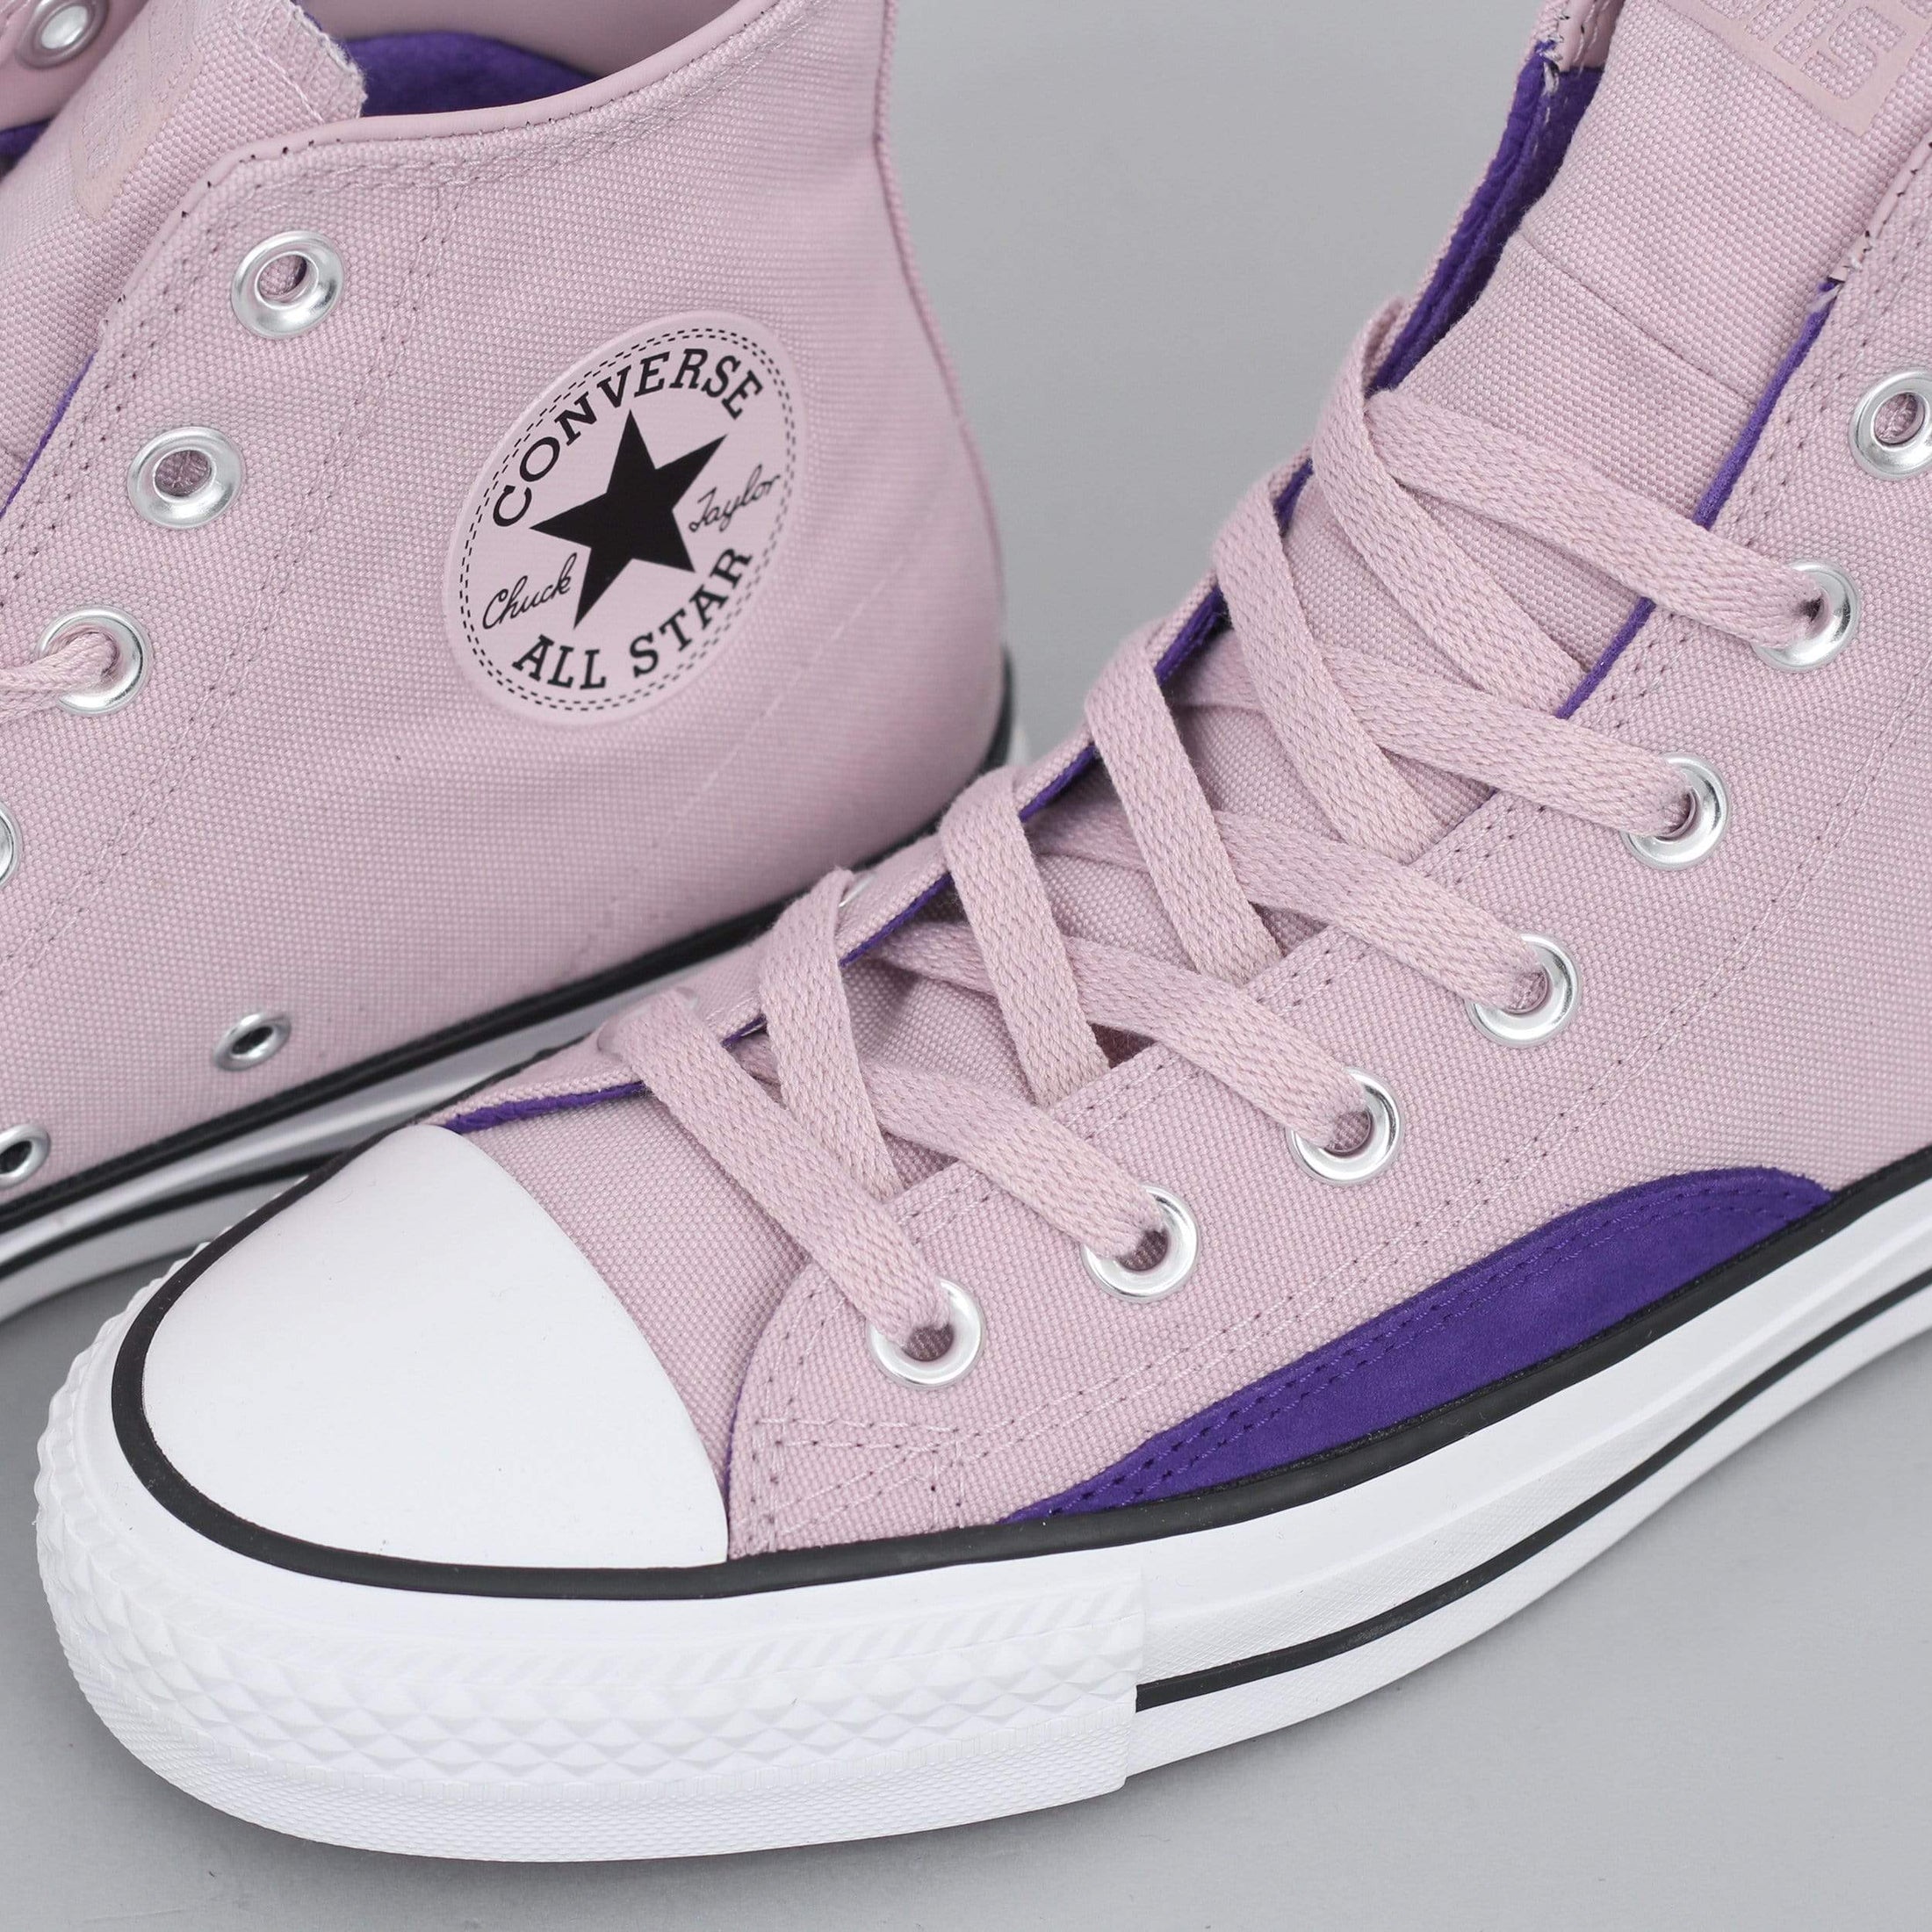 Converse CTAS Pro OP Hi Shoes Plum Chalk / Court Purple / White